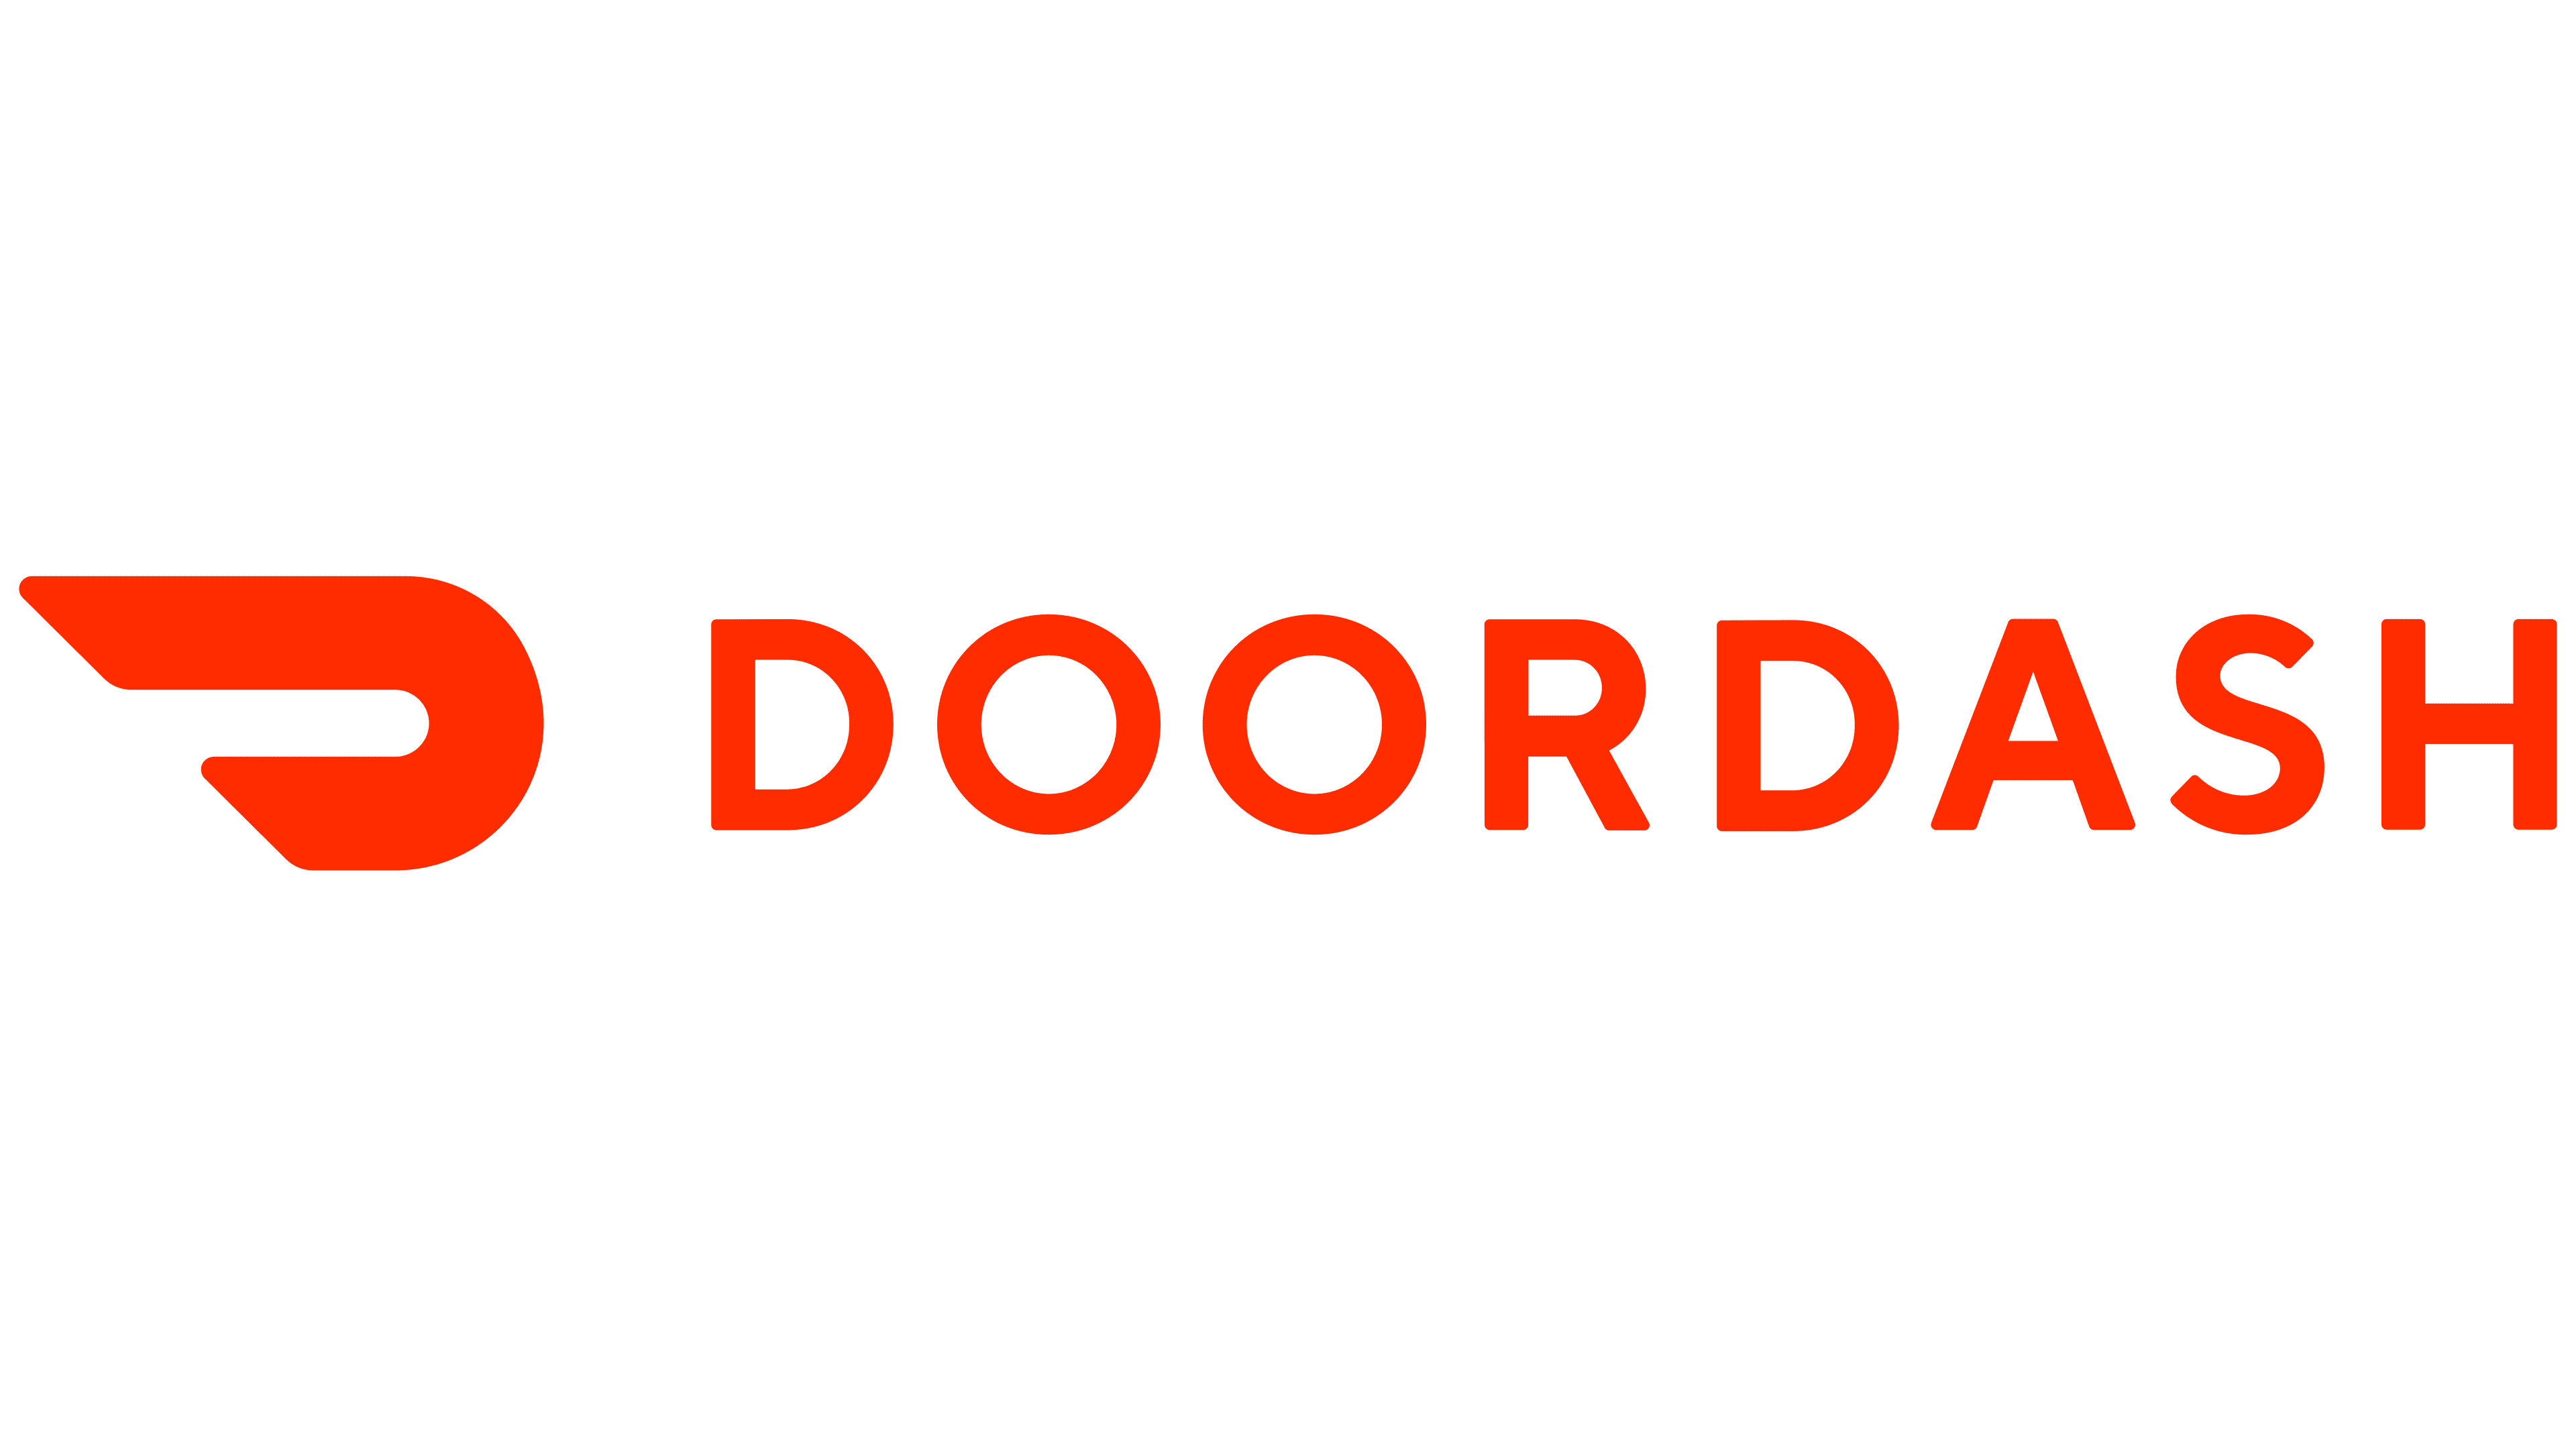 Doordash Software Engineer Interview Guide